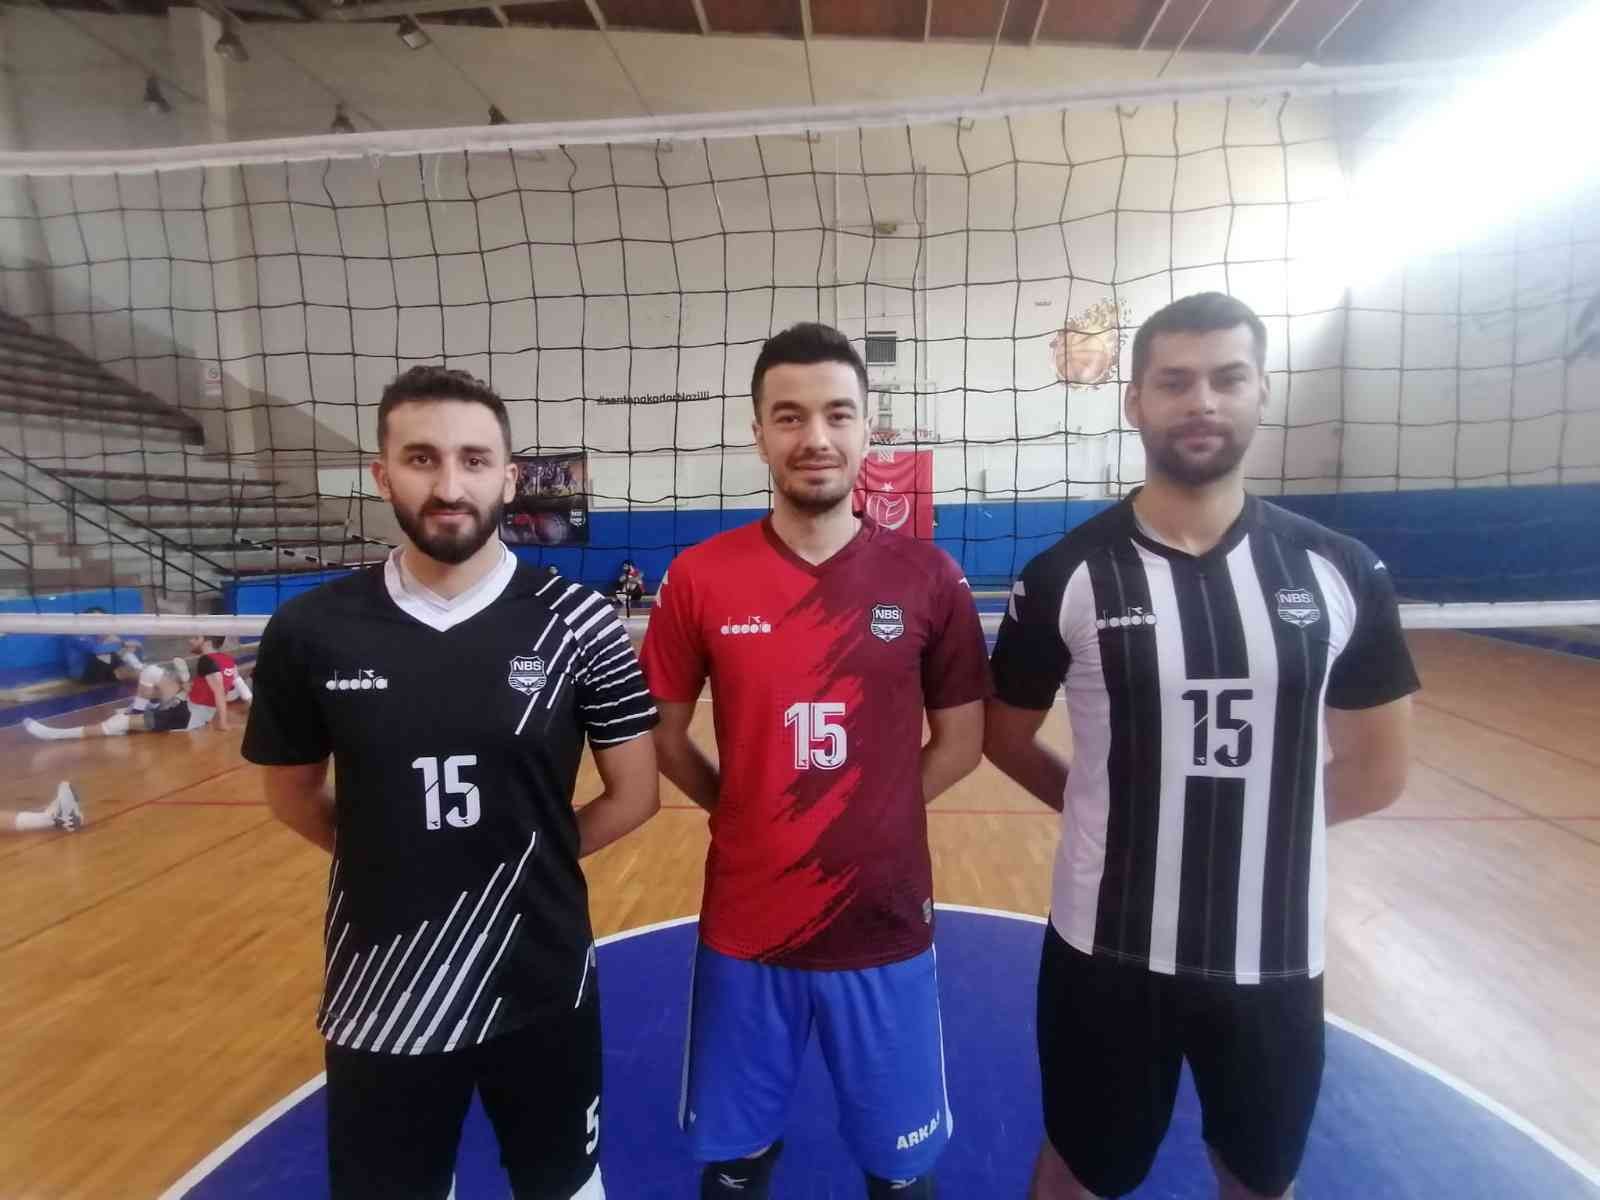 Nazilli Belediyespor Erkek Voleybol Takımı 3 yeni isimle anlaştı